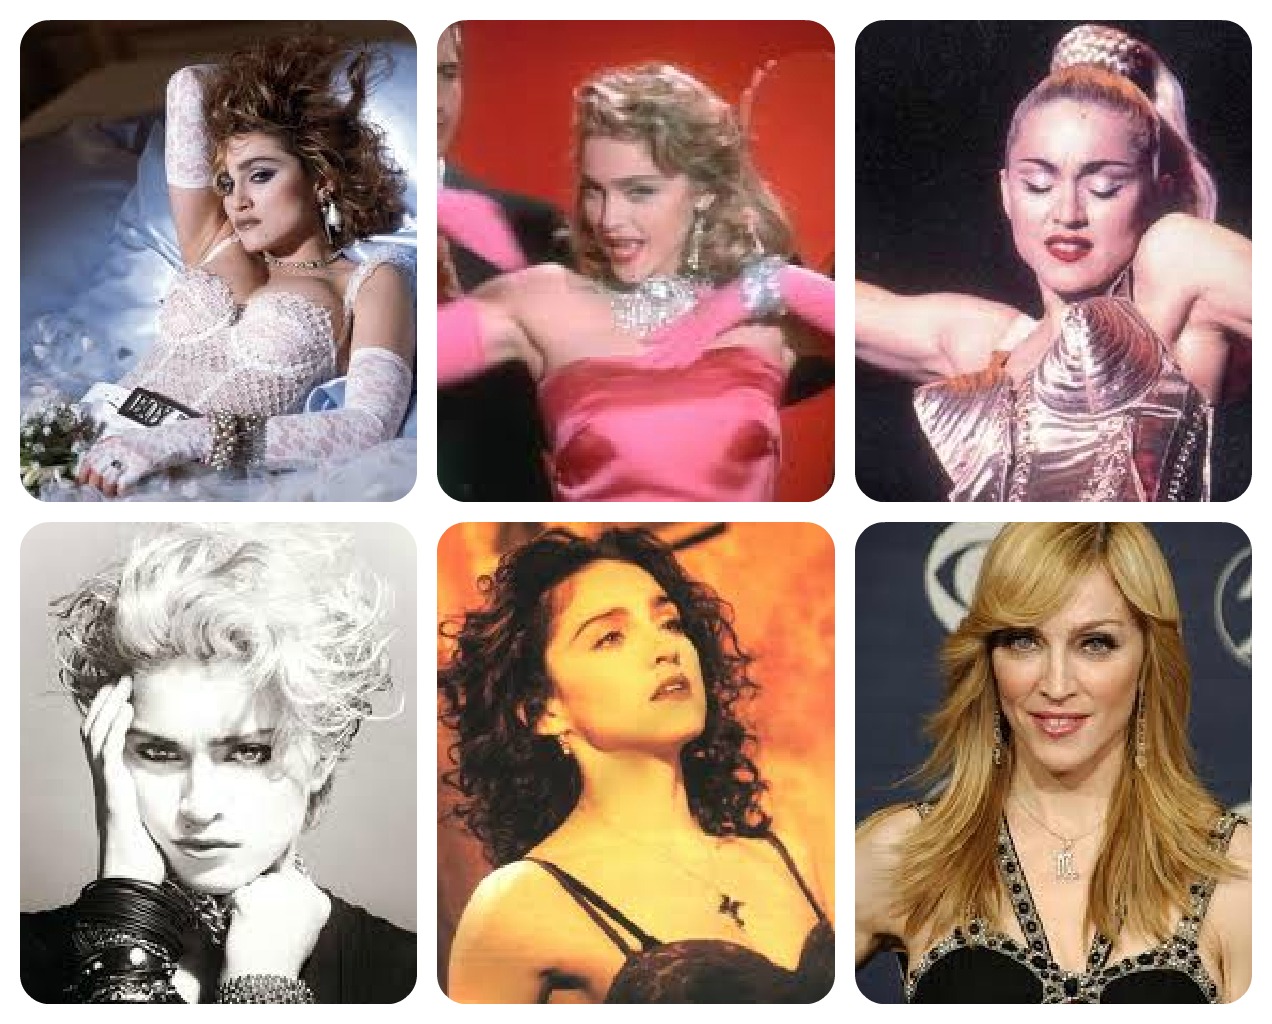 http://1.bp.blogspot.com/-sSx_ghvB7Q4/T_DAF3EbrhI/AAAAAAAABd0/1chRuiKJULs/s1600/Madonna.jpg